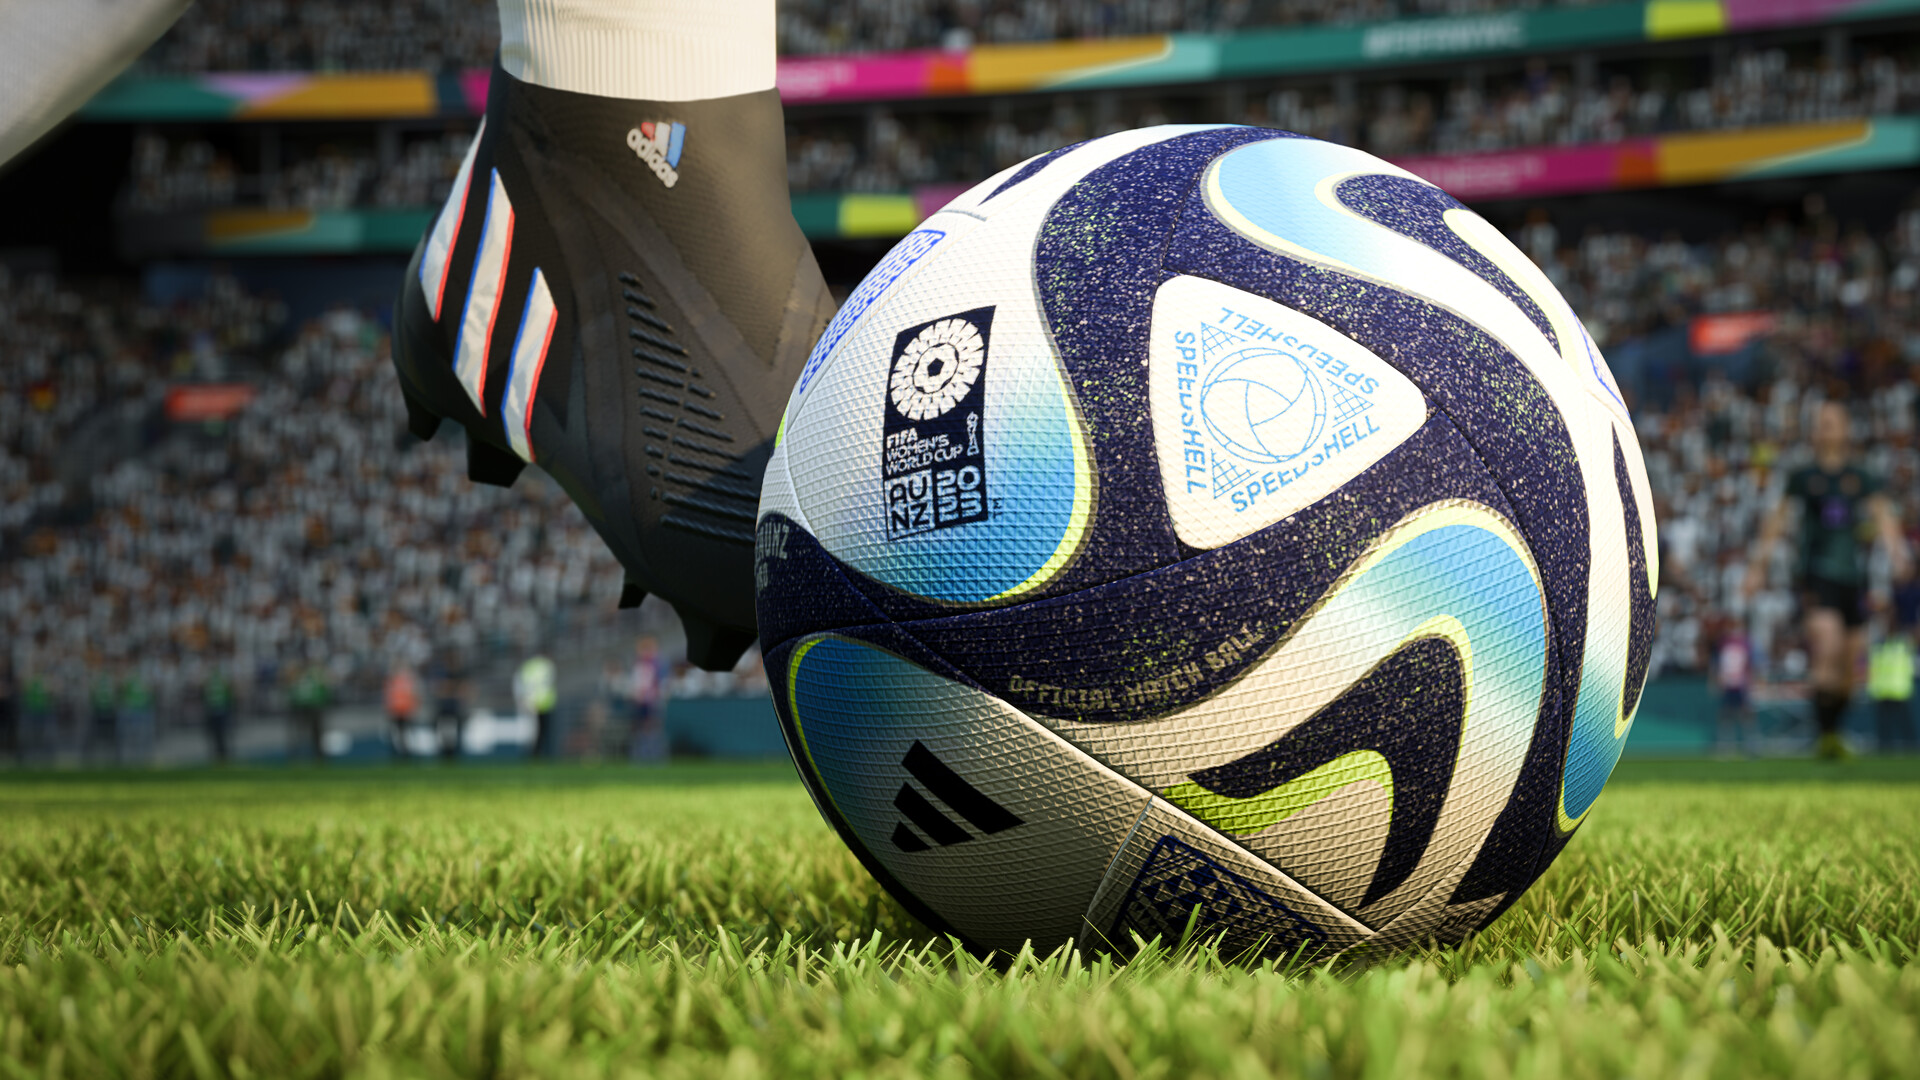 Jogar EA SPORTS™ FIFA 23 Edição Standard para Xbox One